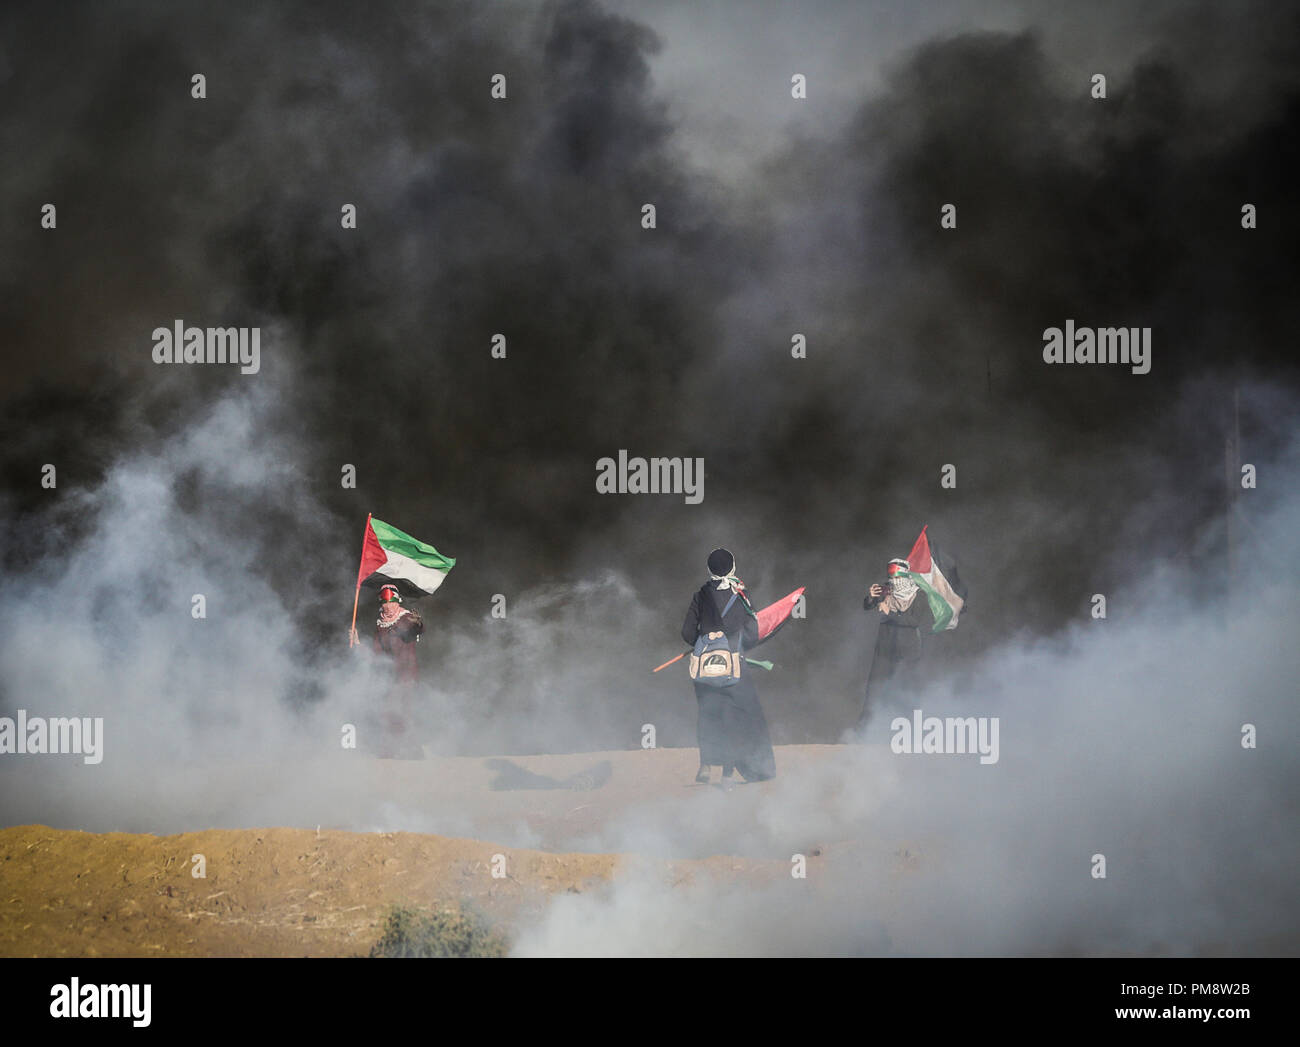 Palästinensische Frauen gesehen Holding flags zwischen riesigen rauchwolken während der Auseinandersetzungen. Auseinandersetzungen zwischen palästinensischen Demonstranten und israelischen Kräfte während eines Protestes entlang der israelischen Zaun östlich von Gaza-stadt. Stockfoto